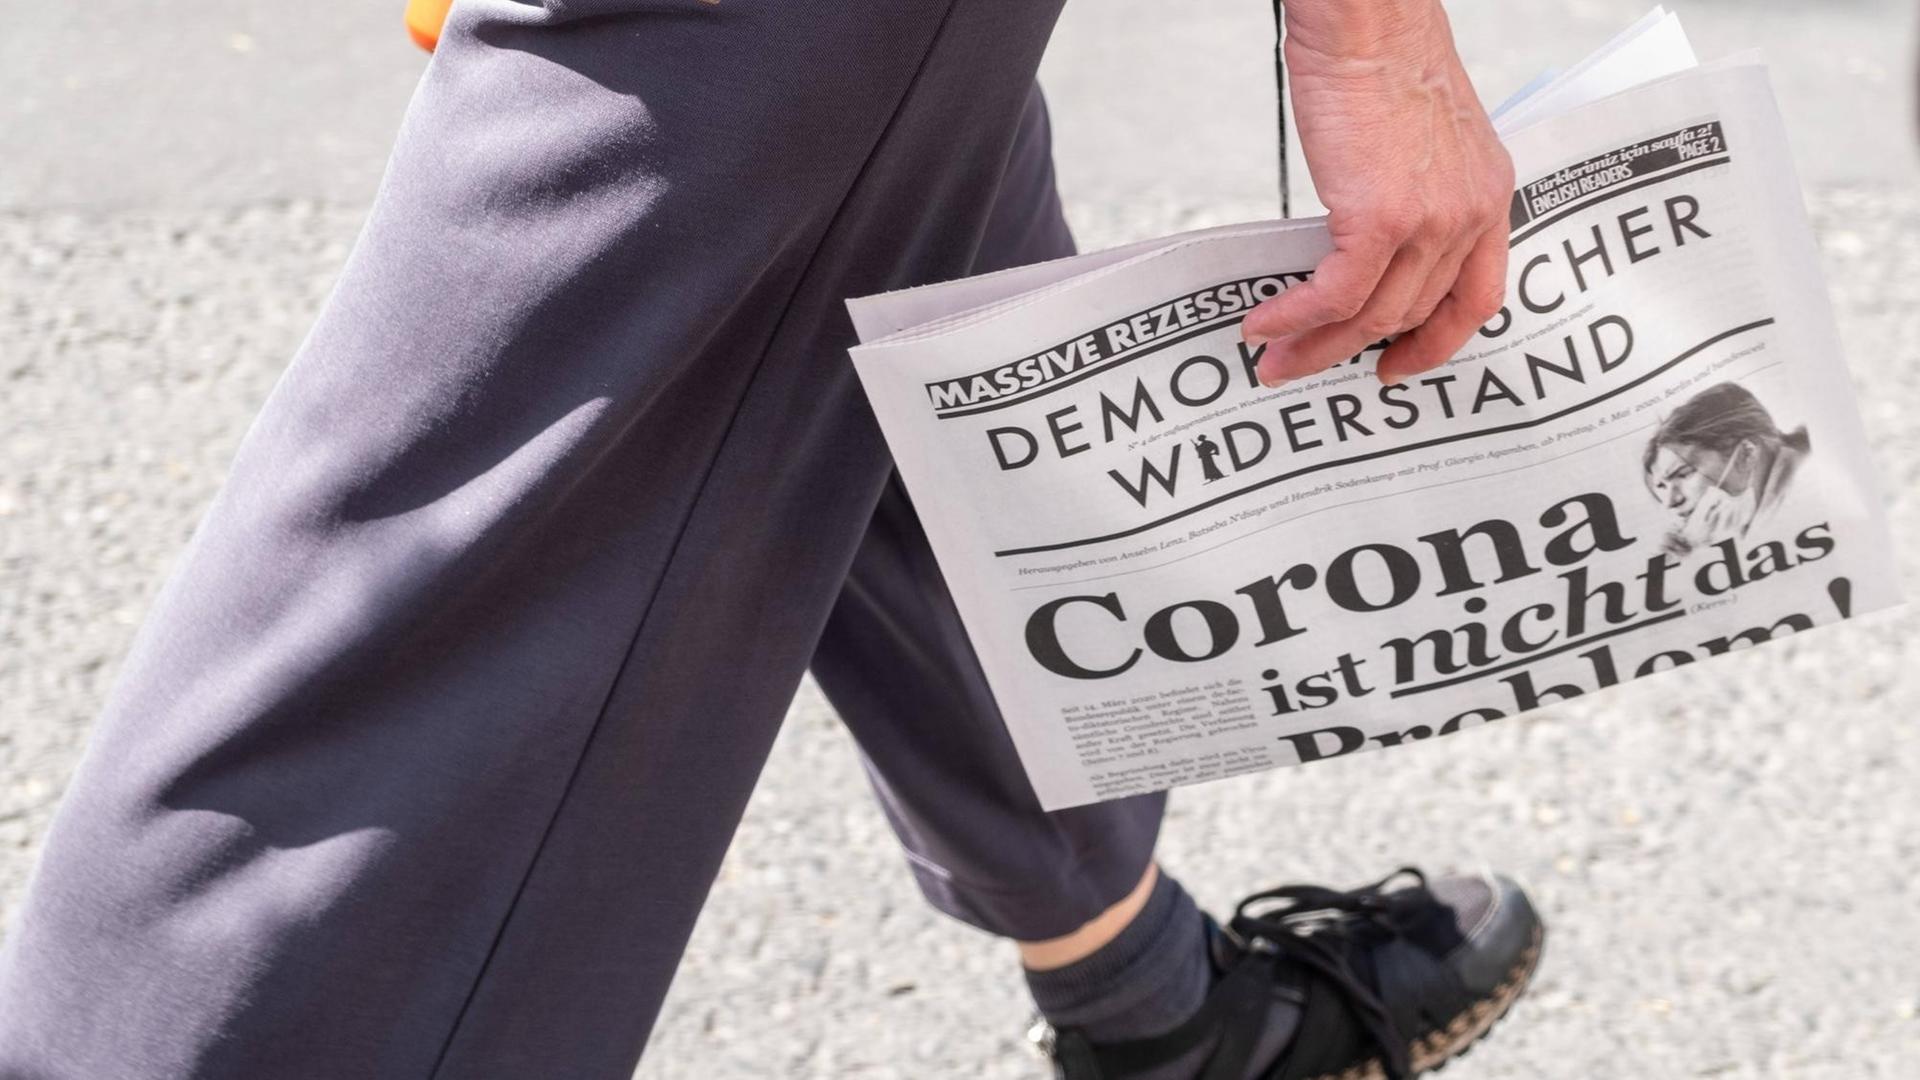 Die Zeitung "Demokratischer Widerstand" mit der Überschrift "Corona ist nicht das Problem" beim Prostest der "Kommunikationsstelle Demokratischer Widerstand" in Berlin.